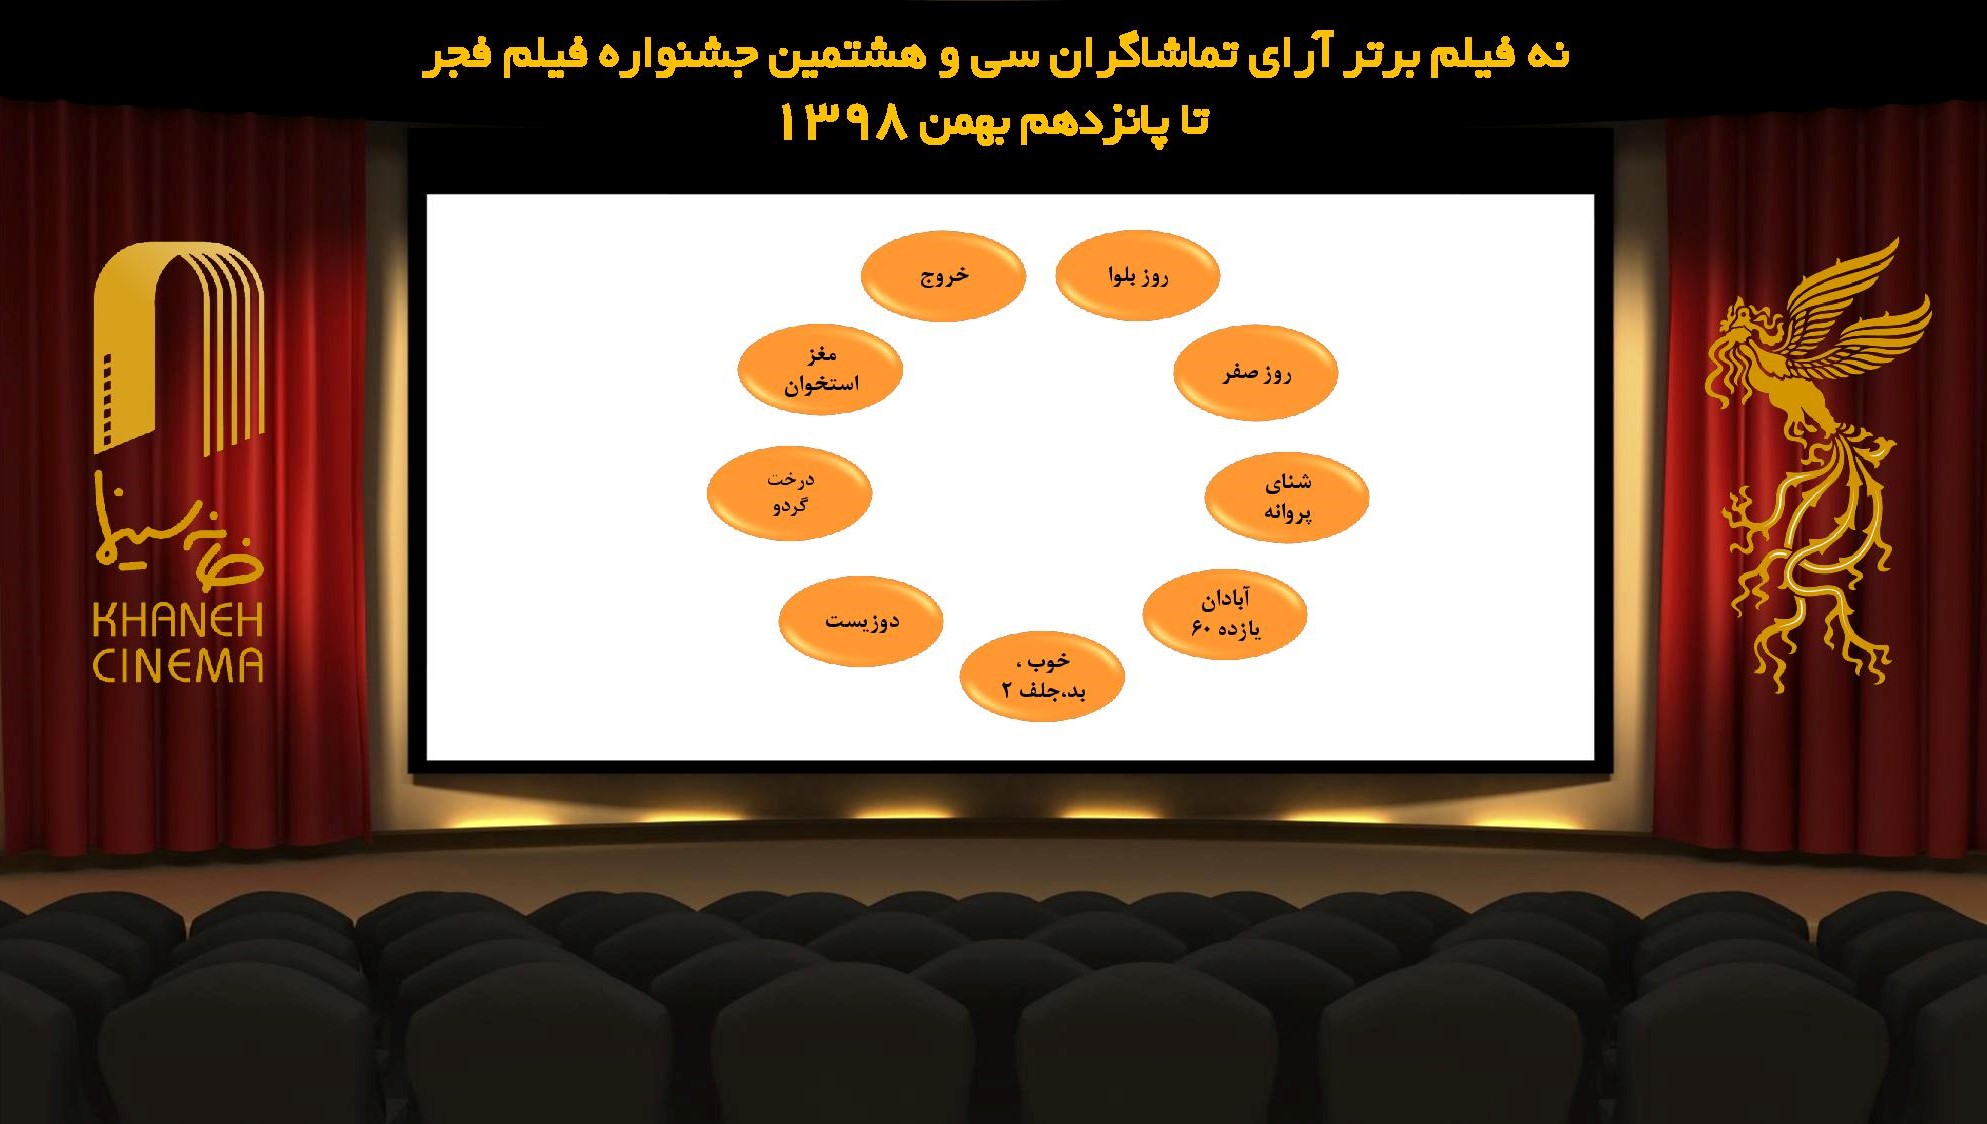 نتیجه شمارش آرای فیلم های نمایش داده شده در چهارمین روز جشنواره فیلم فجر اعلام شد.